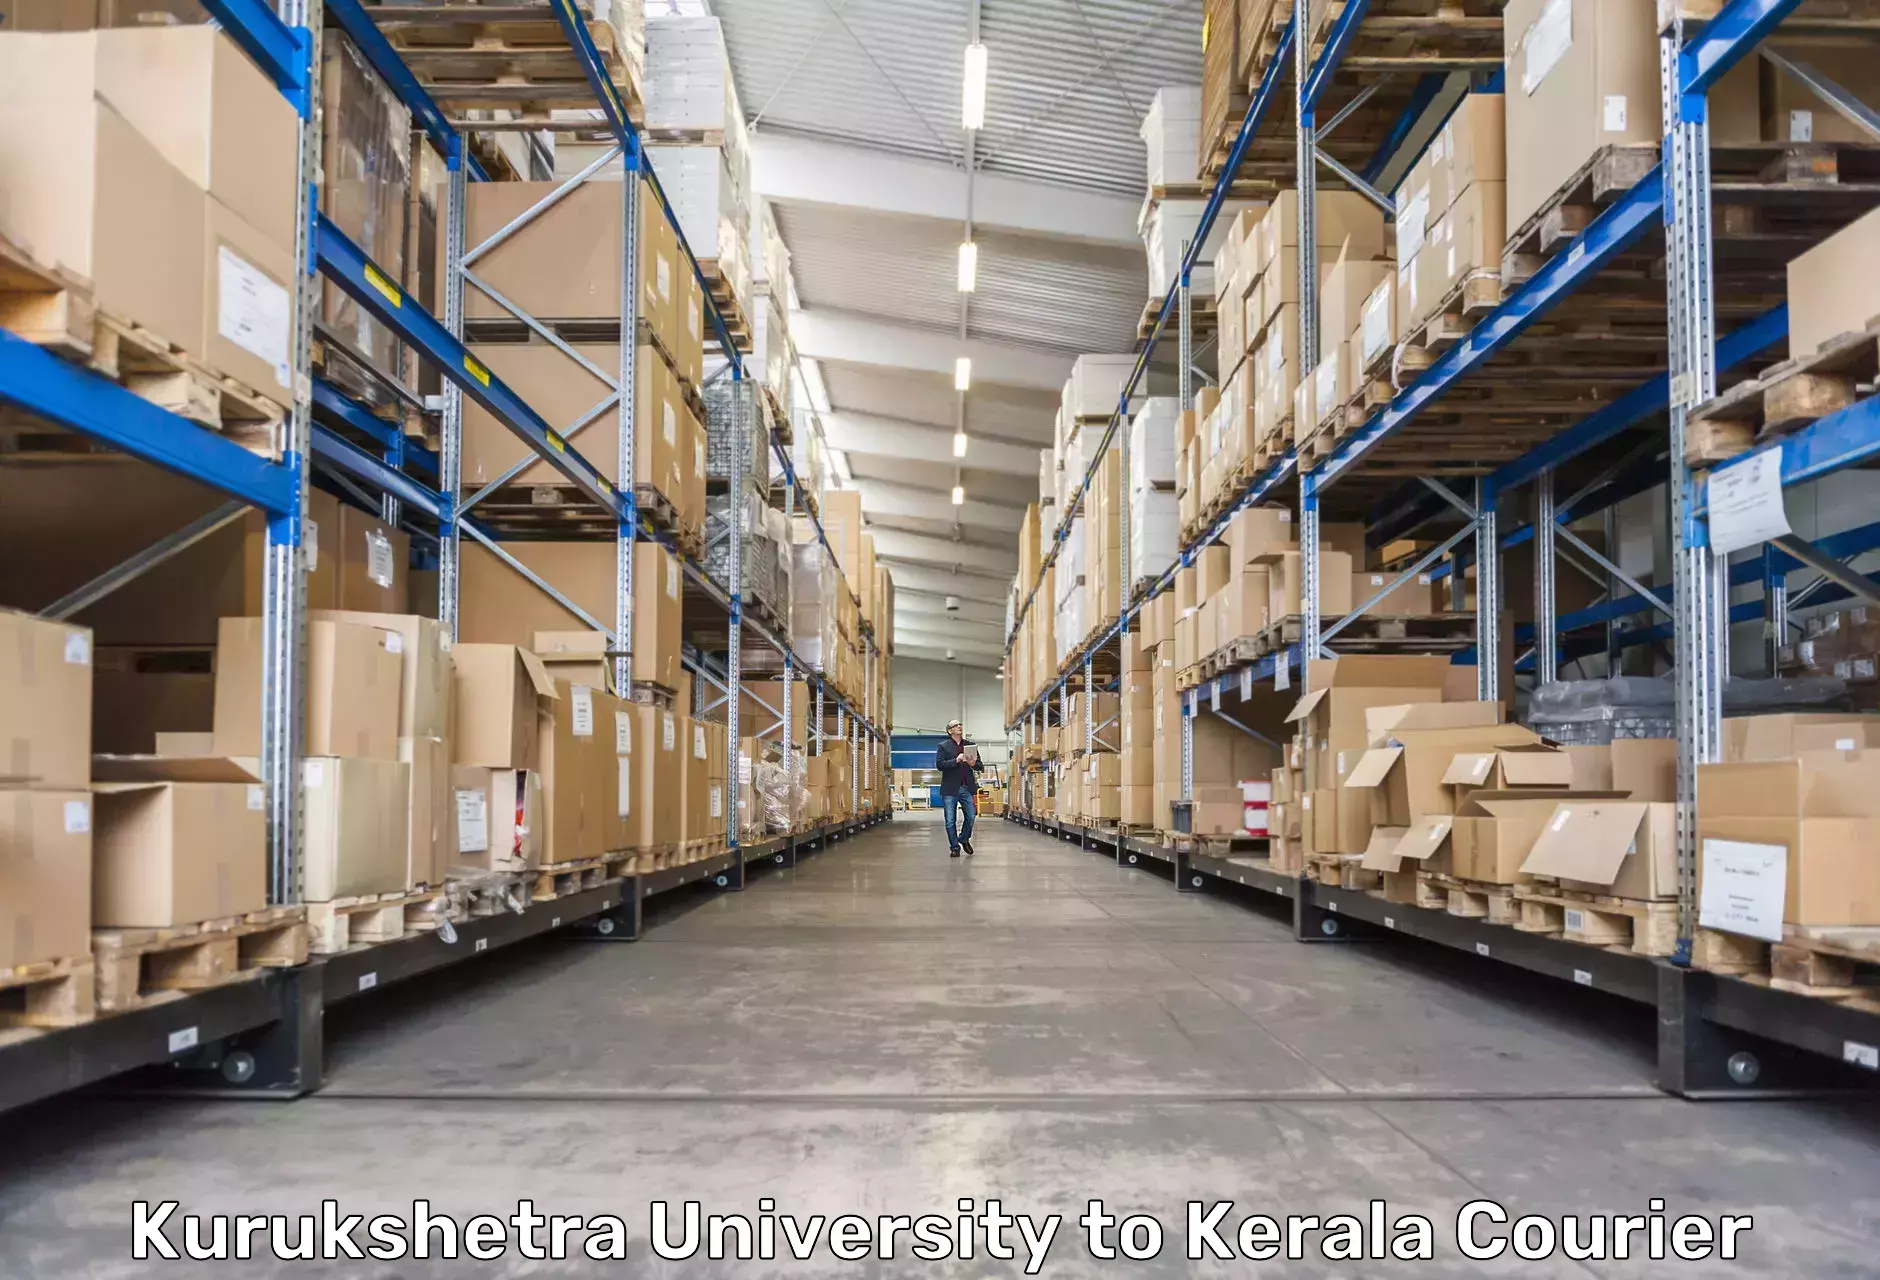 Nationwide delivery network Kurukshetra University to Ponekkara